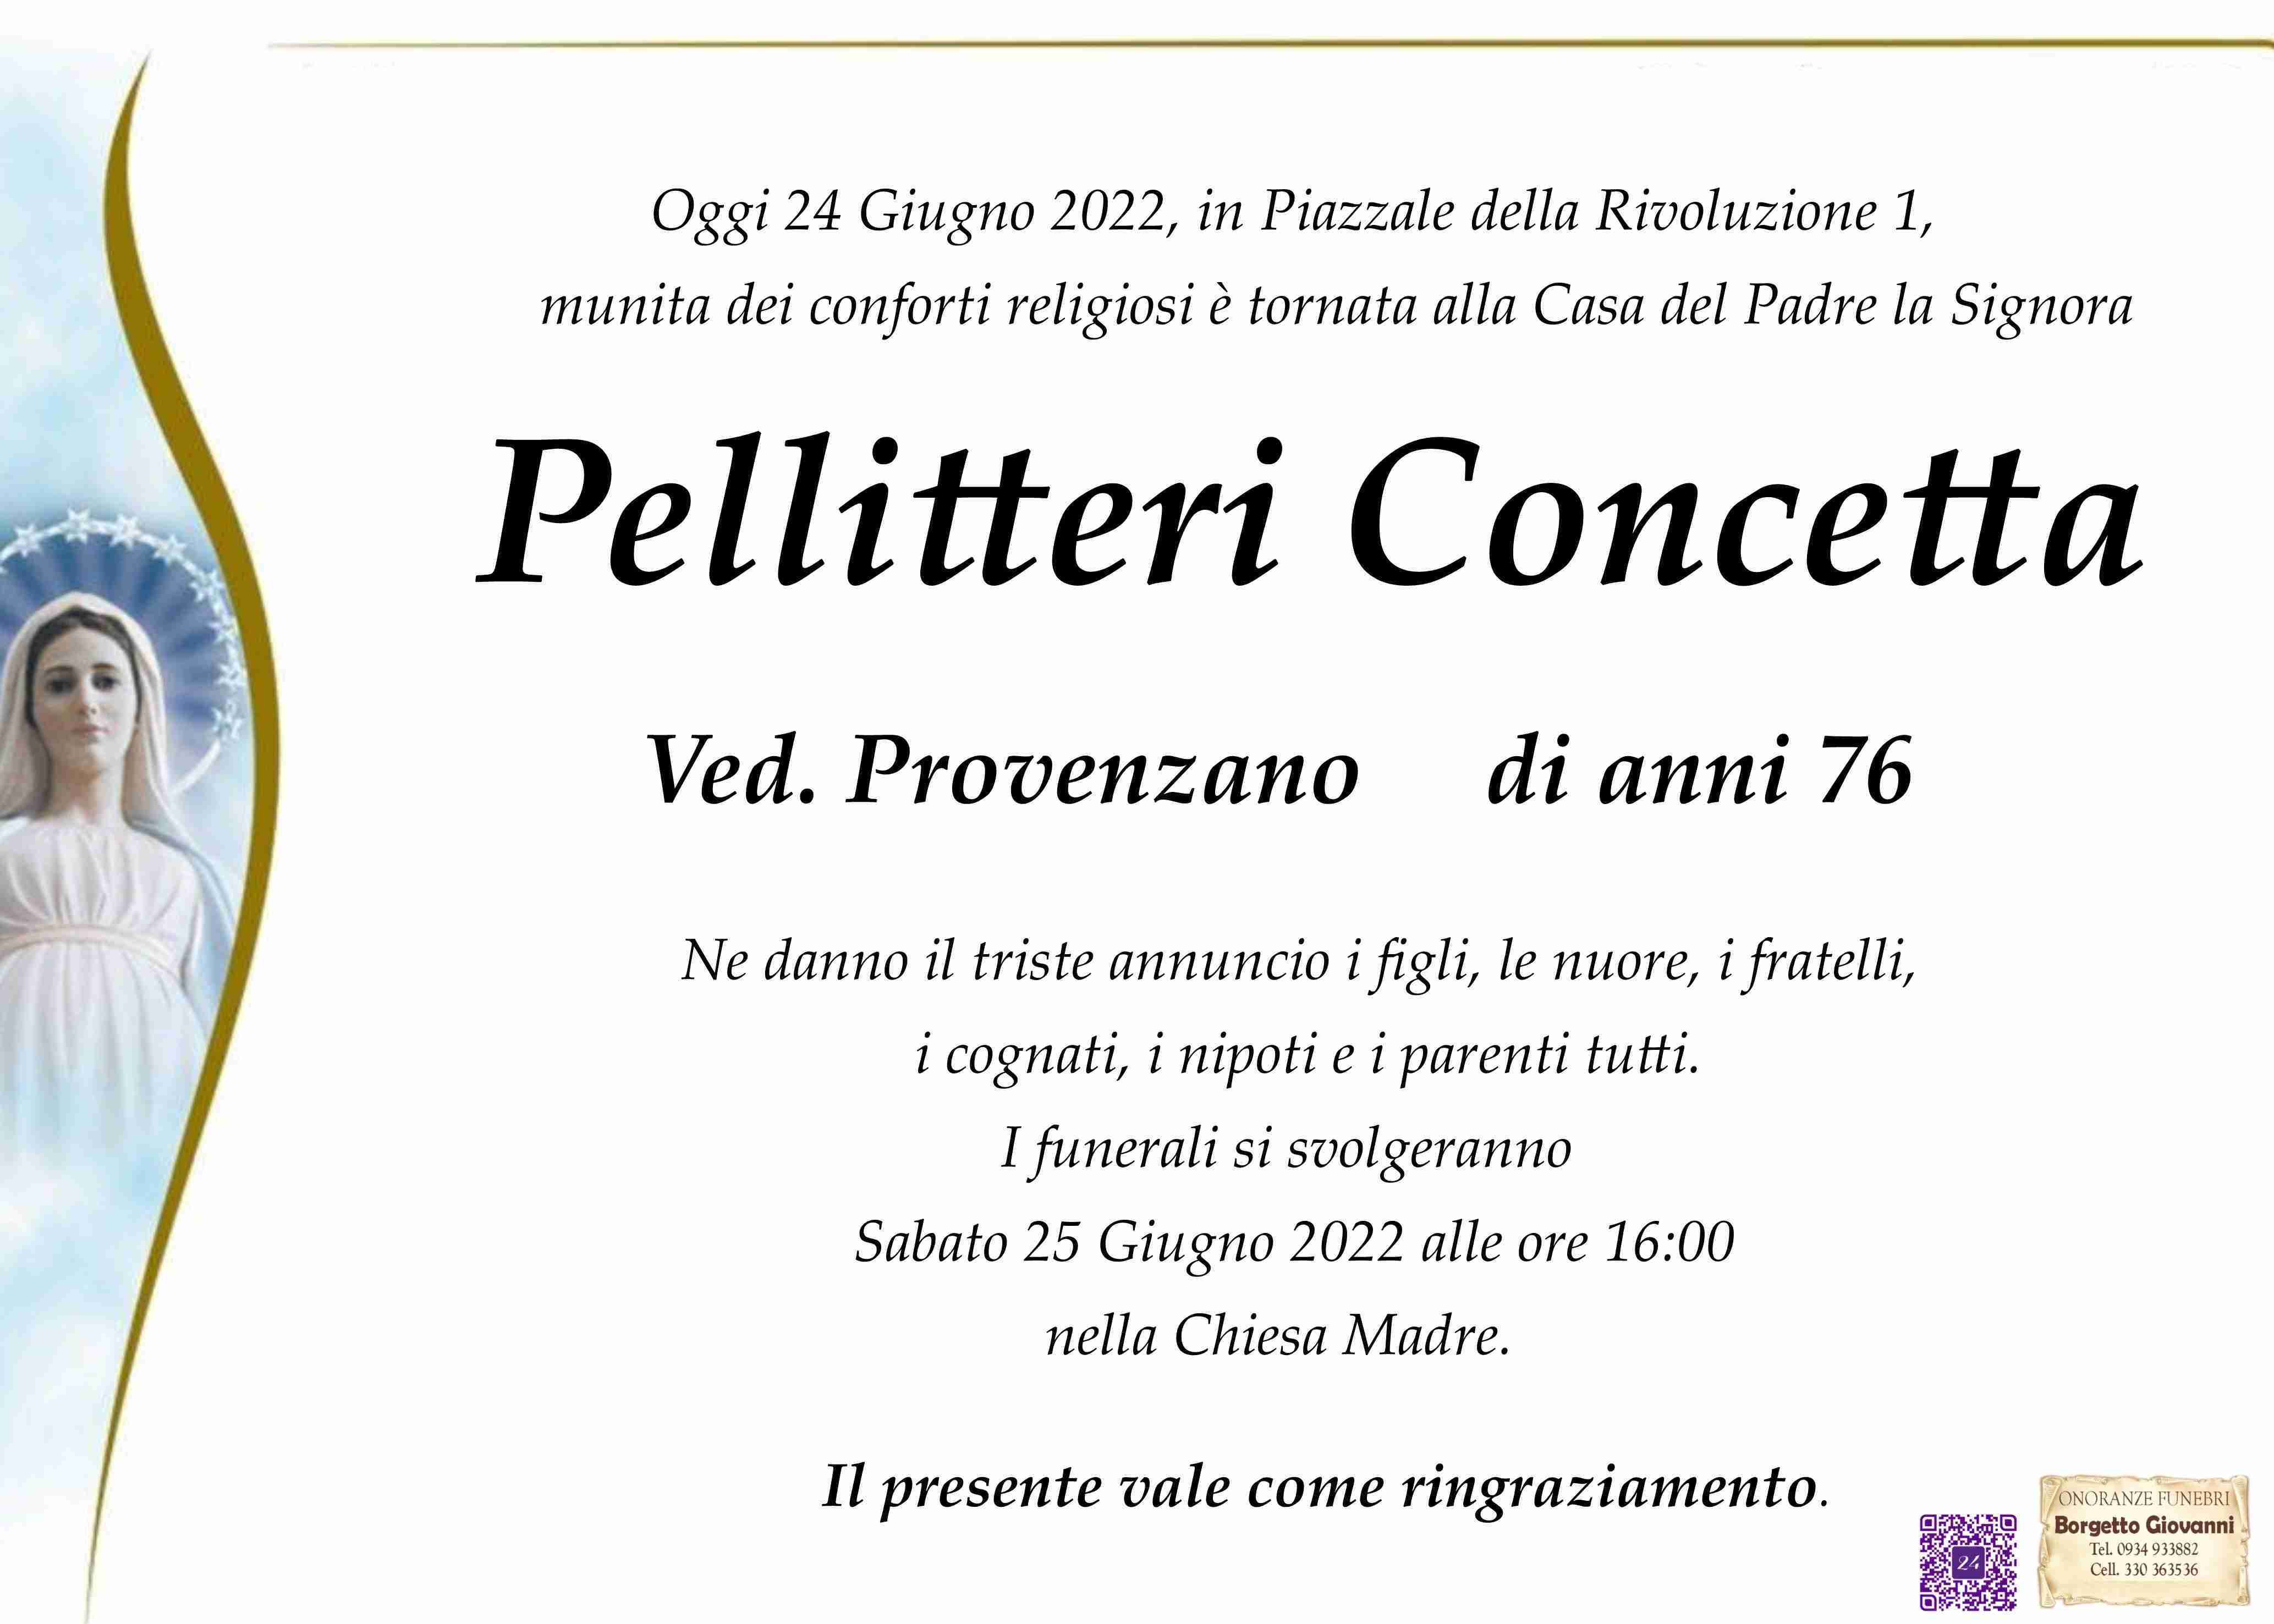 Concetta Pellitteri